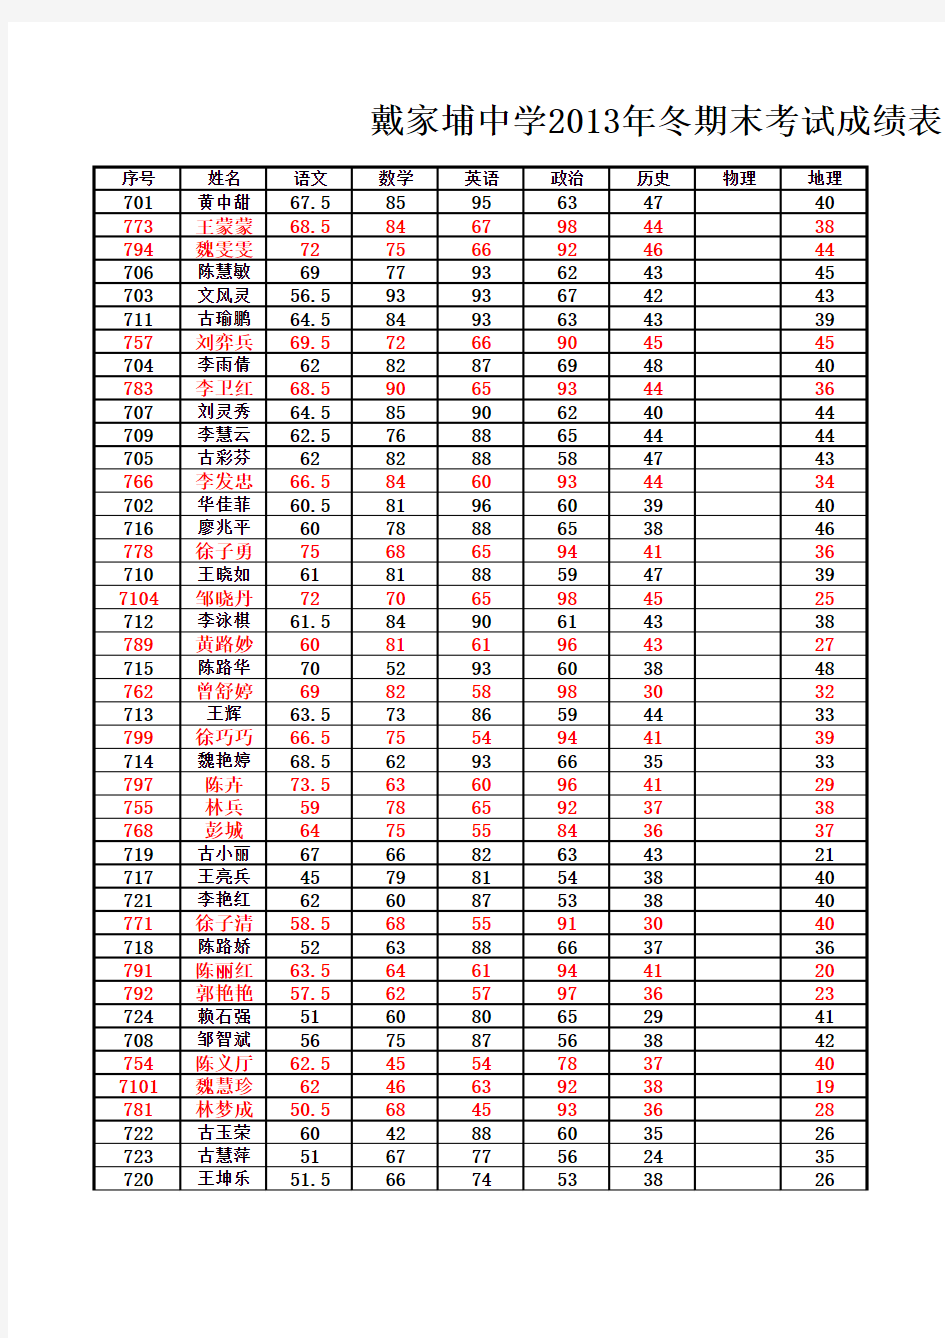 戴家埔中学2013年下半年期末考试学生成绩统计表(正式)